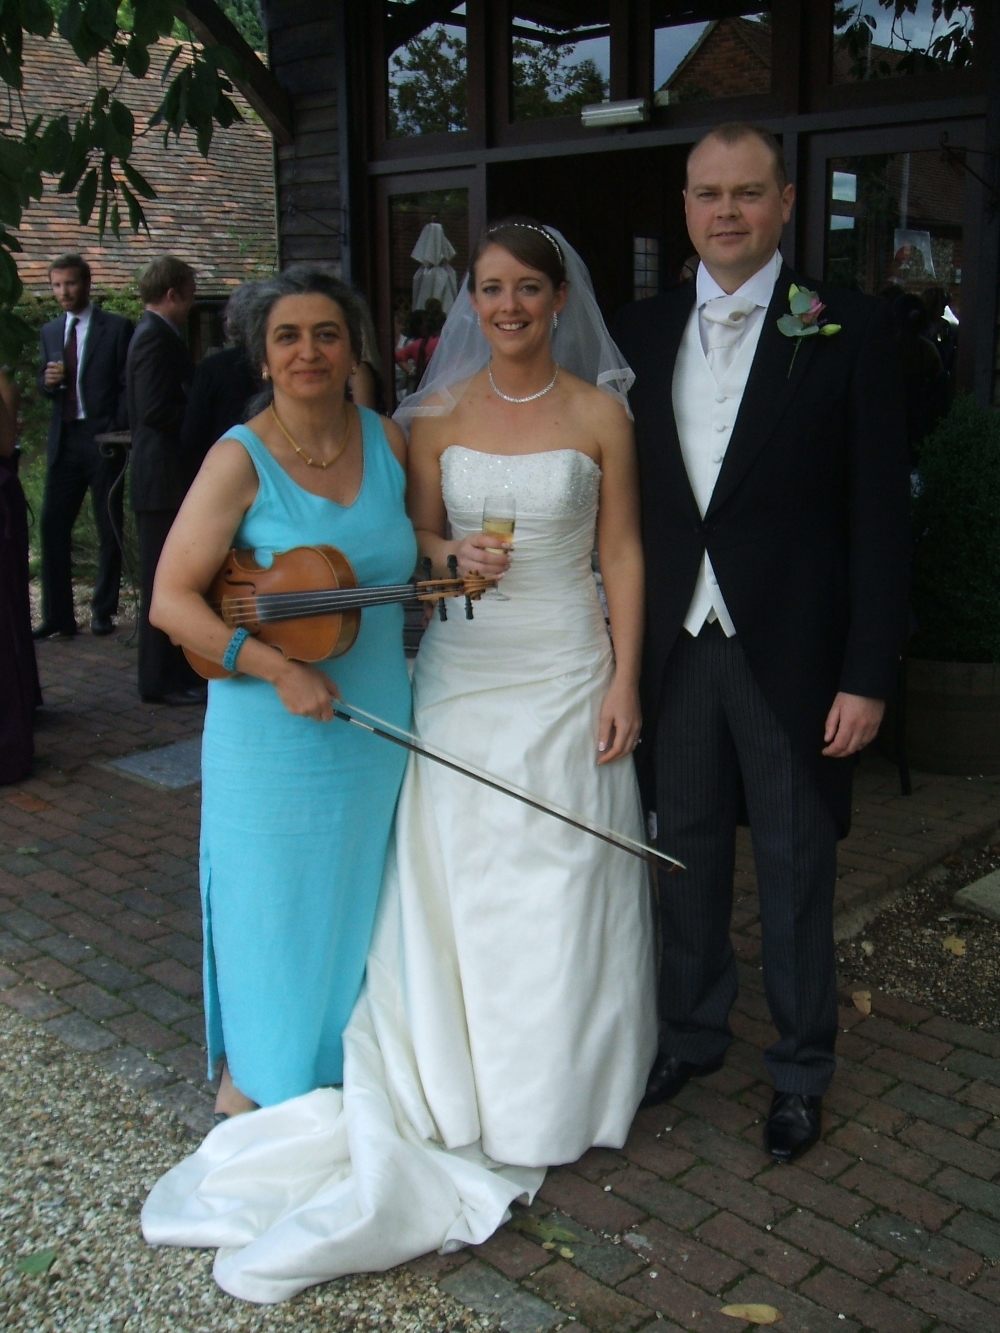 Gli sposi e la musicista del loro matrimonio a Bix Manor, vicino a Oxford, dopo la cerimonia. Musicista professionista per ceremonia, ricevimento, la tua musica perferita suonata alla viola